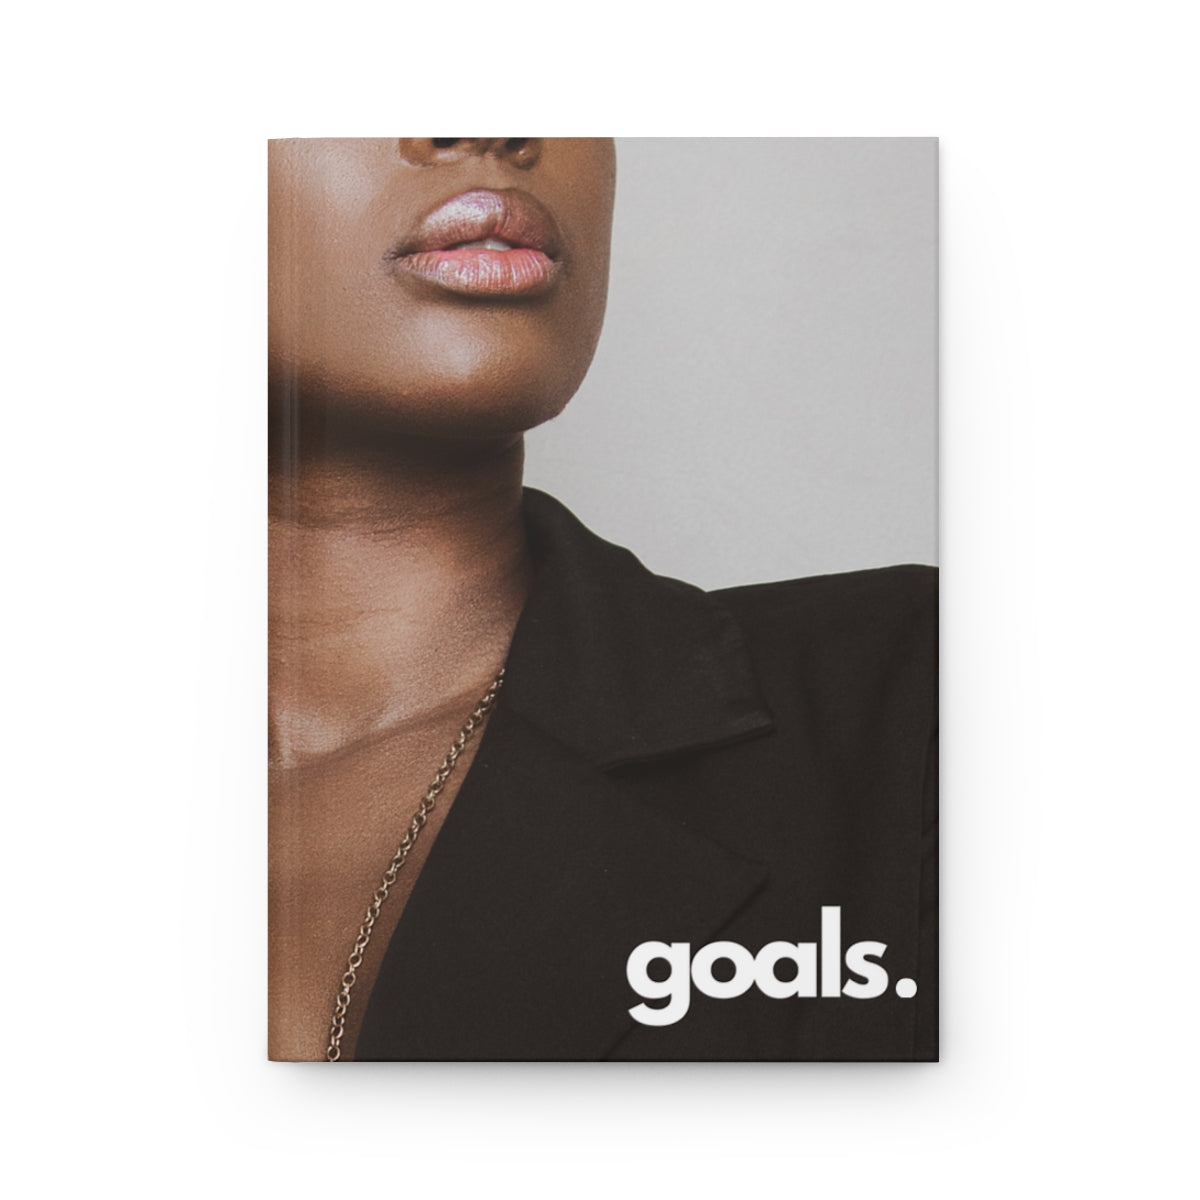 "goals" Velvety Matte Hardcover Journal